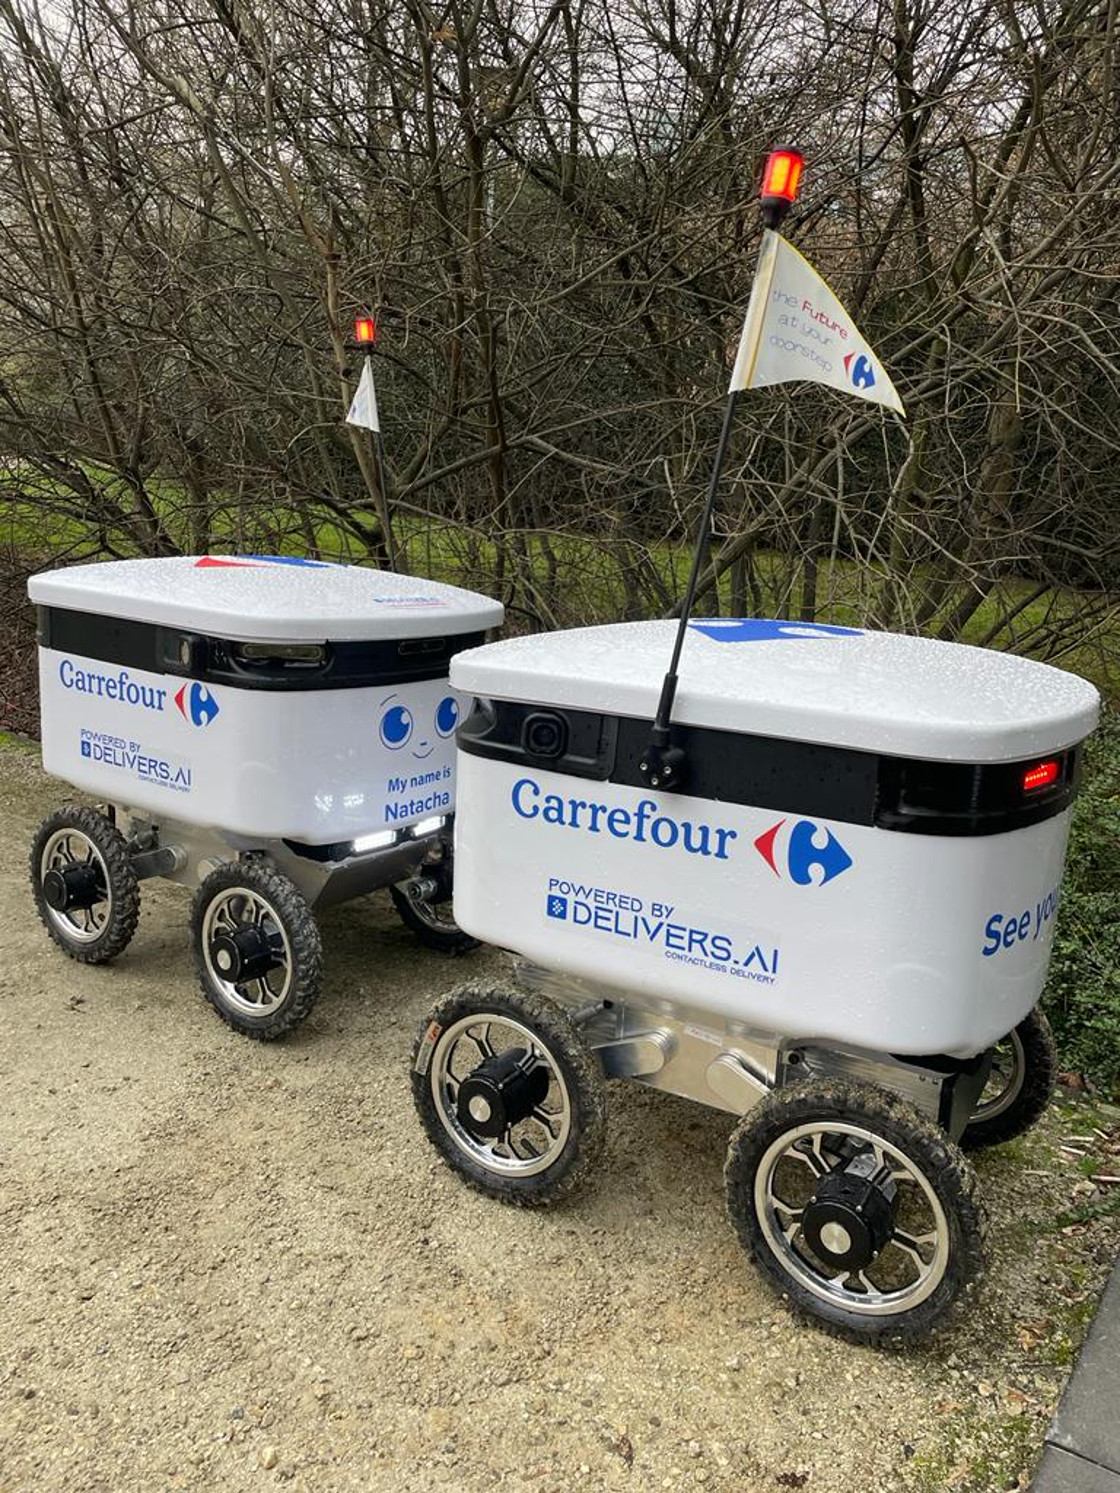 Première en Europe : Carrefour teste la livraison autonome par robot grâce à l’intelligence artificielle de DELIVERS.AI